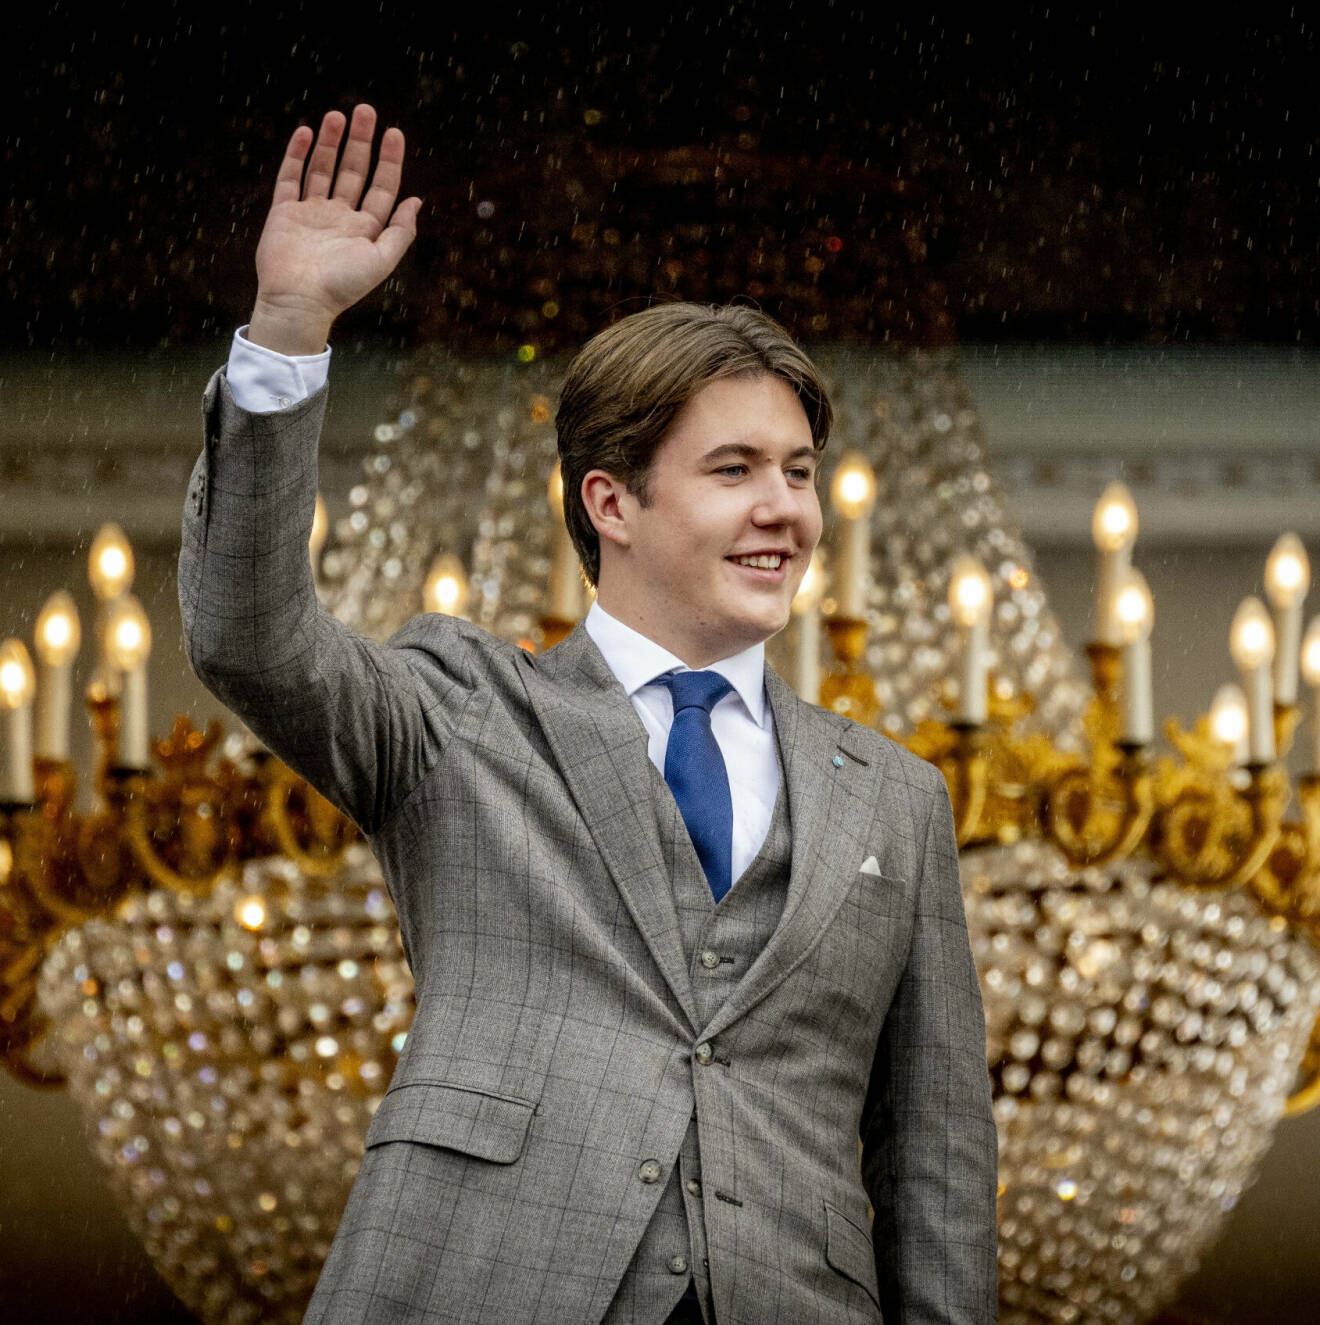 Prins Christian 18 år vid firandet på Amalienborgs slott i Köpenham